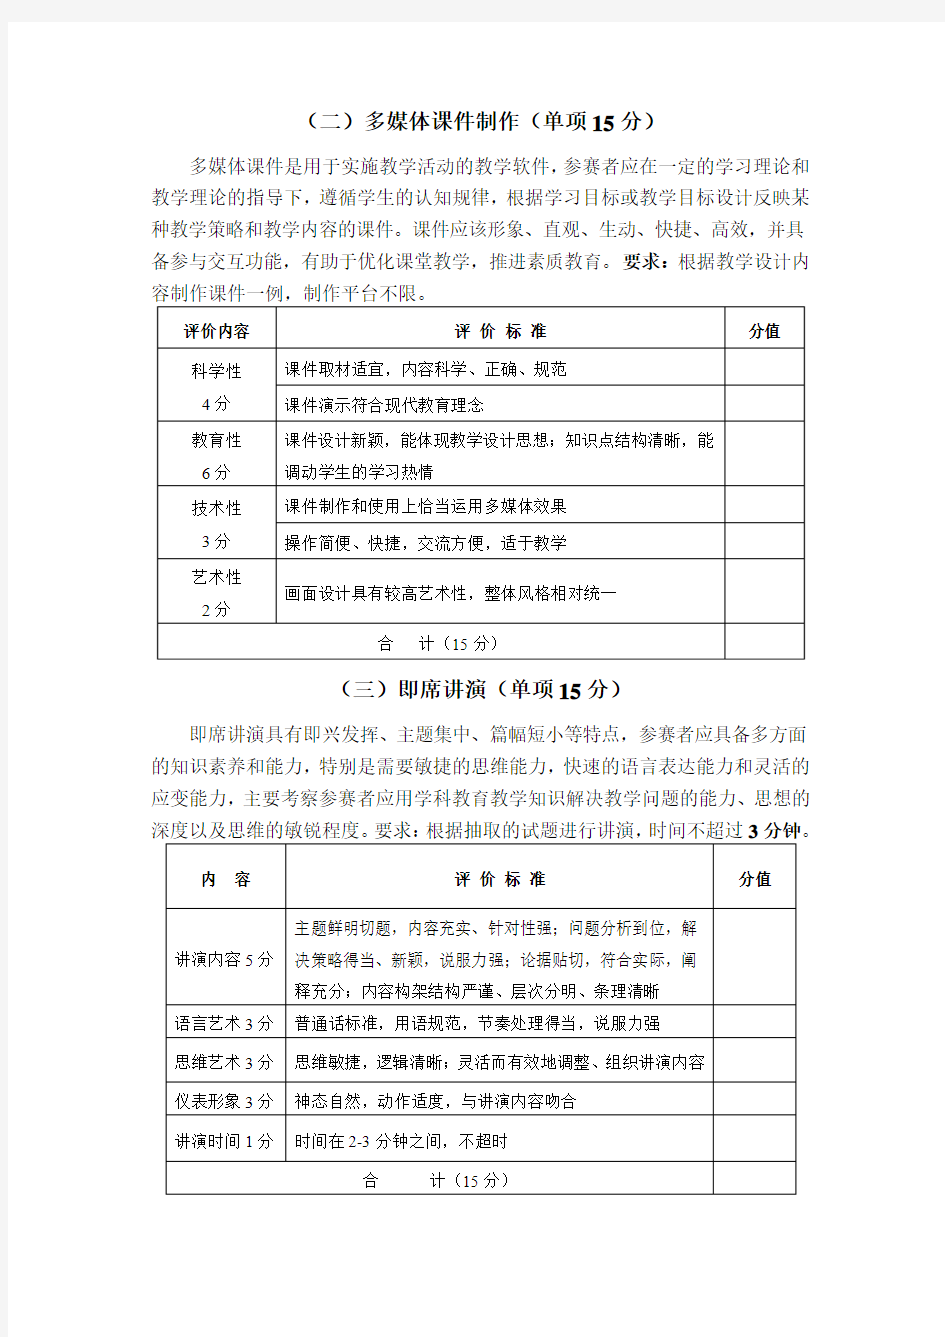 文学院汉语言文学专业师范教学技能竞赛评分标准